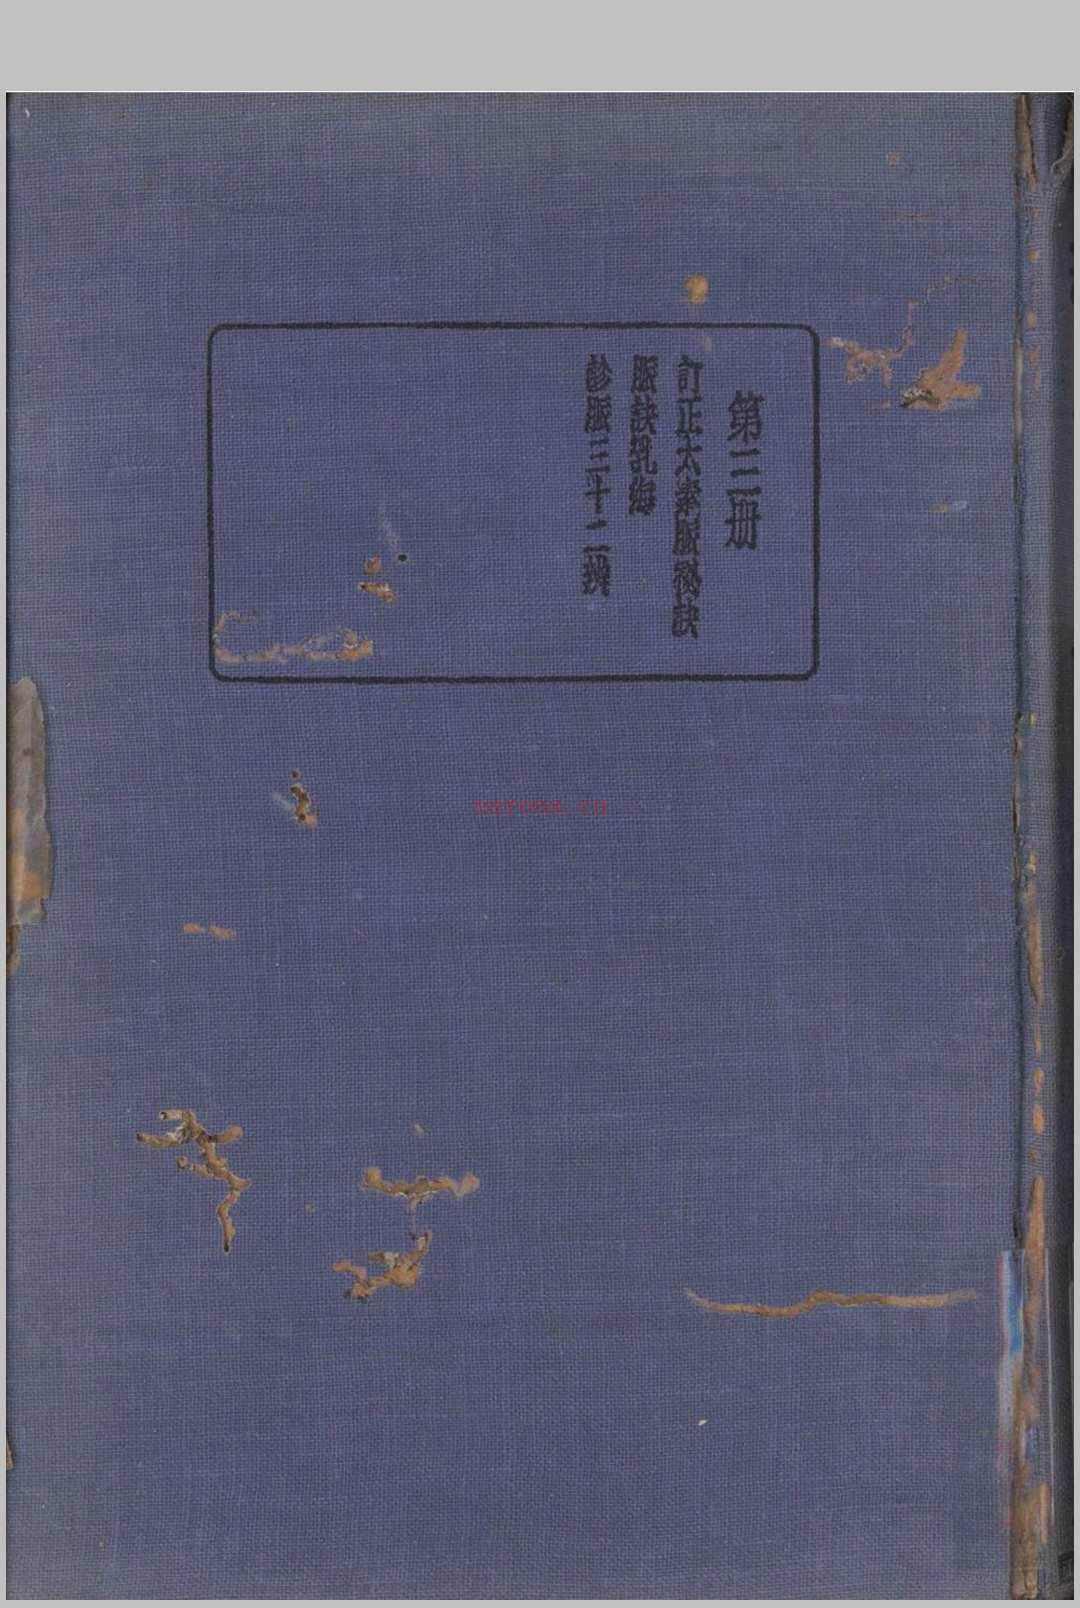 珍本医书集成 第三册 裘吉生主编 1936 世界书局